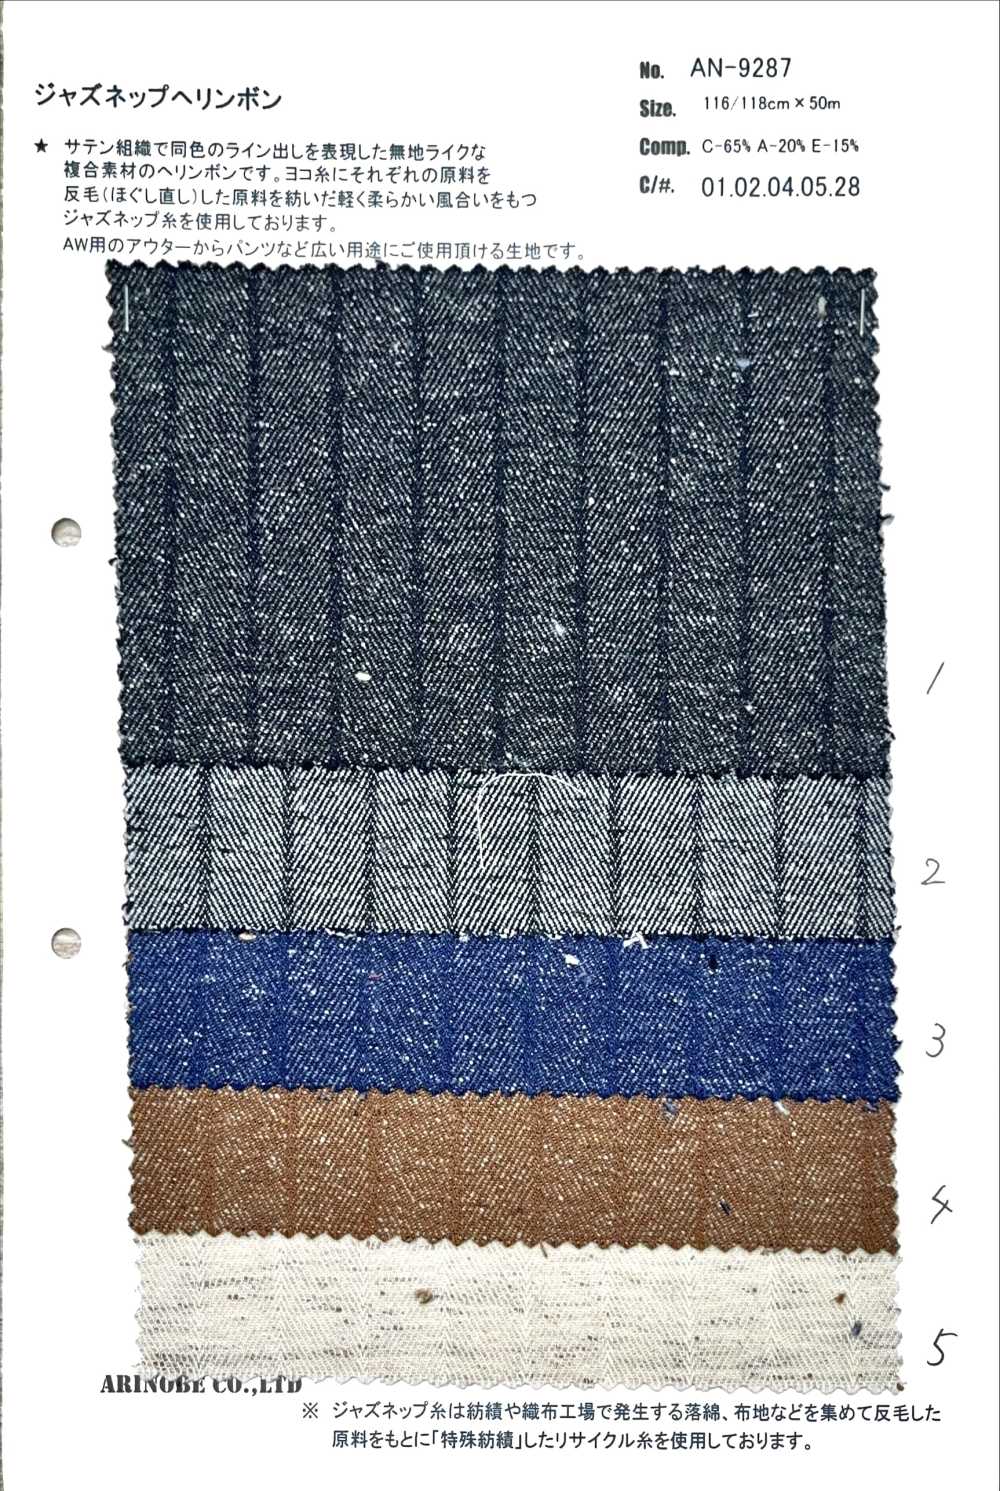 AN-9287 Jazz Nep Herringbone[Textile / Fabric] ARINOBE CO., LTD.